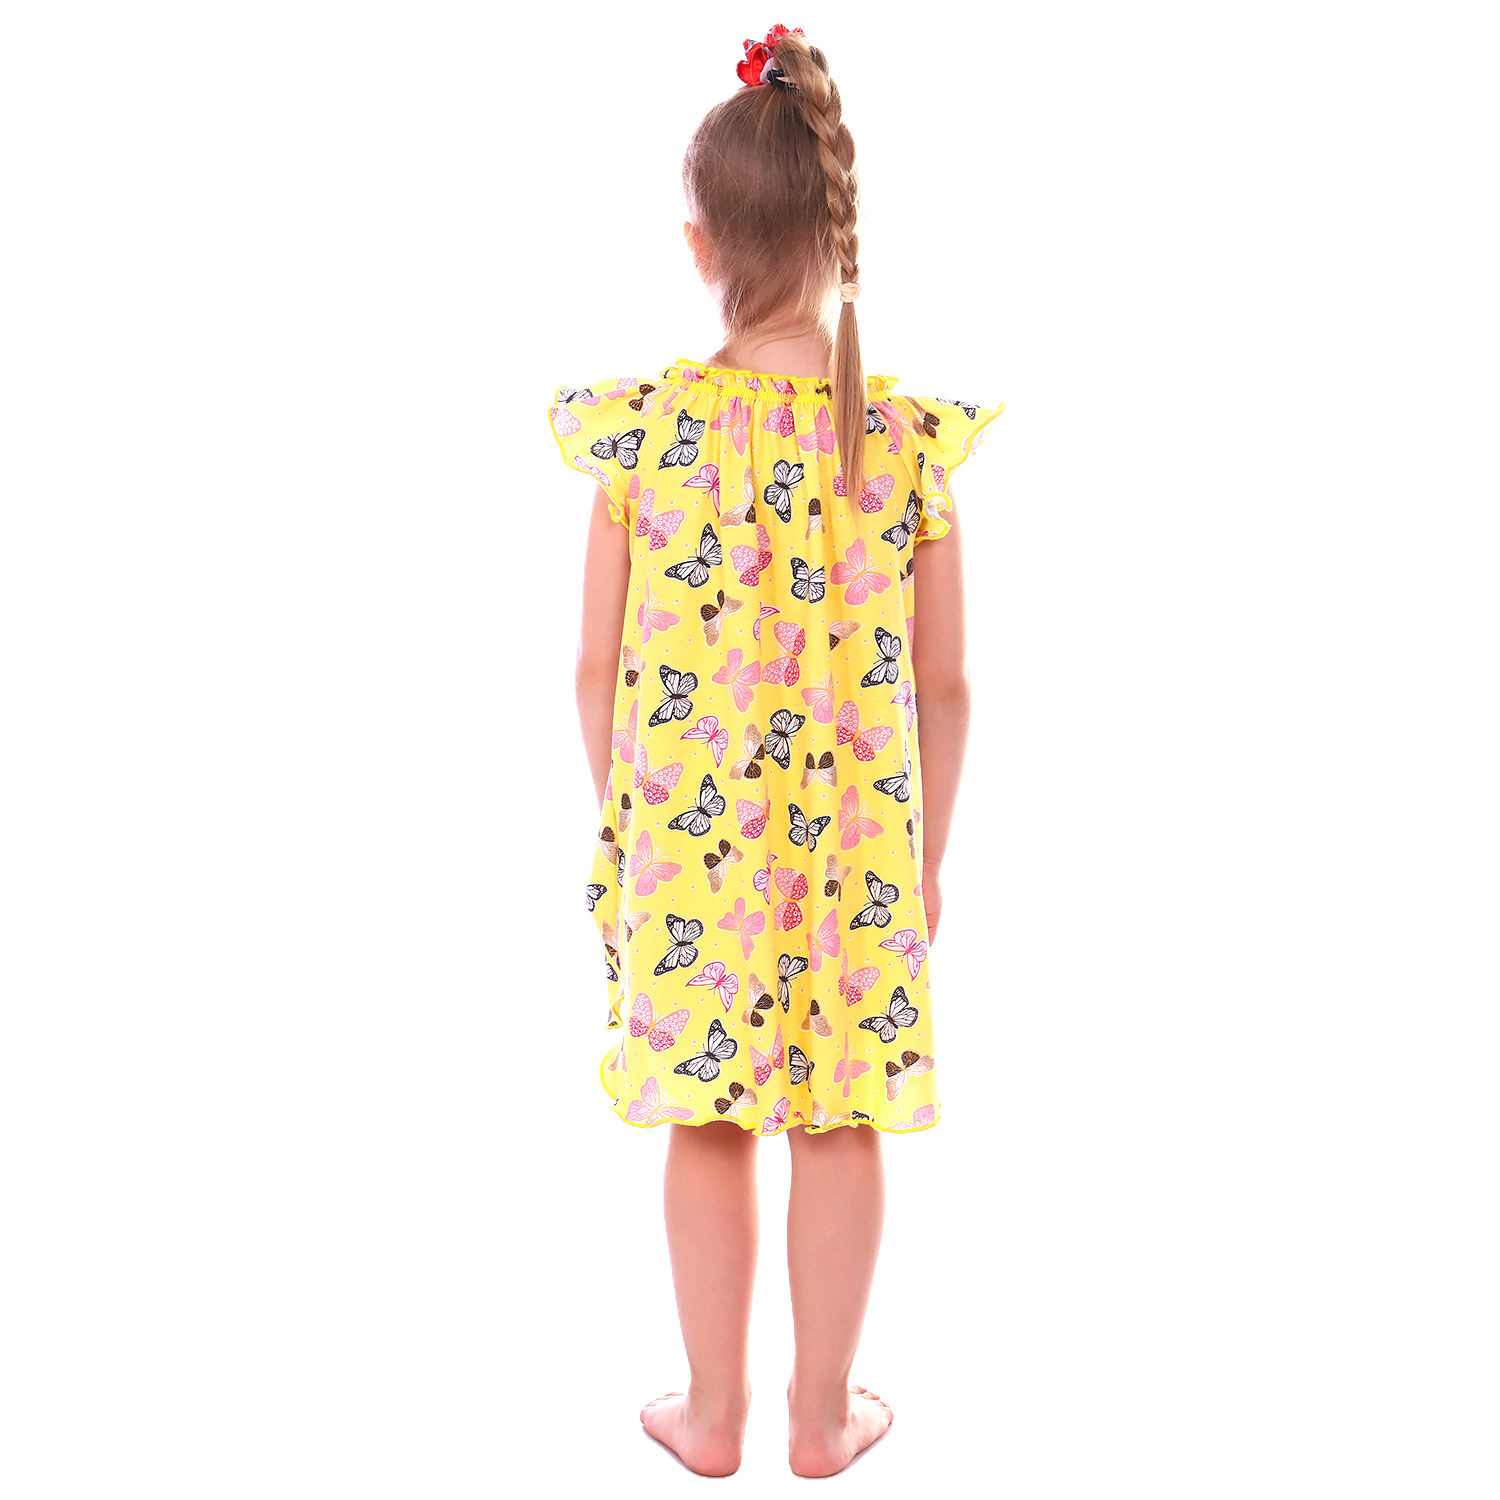 Сорочка ночная Детская Одежда 0003К/желтый2 - фото 4